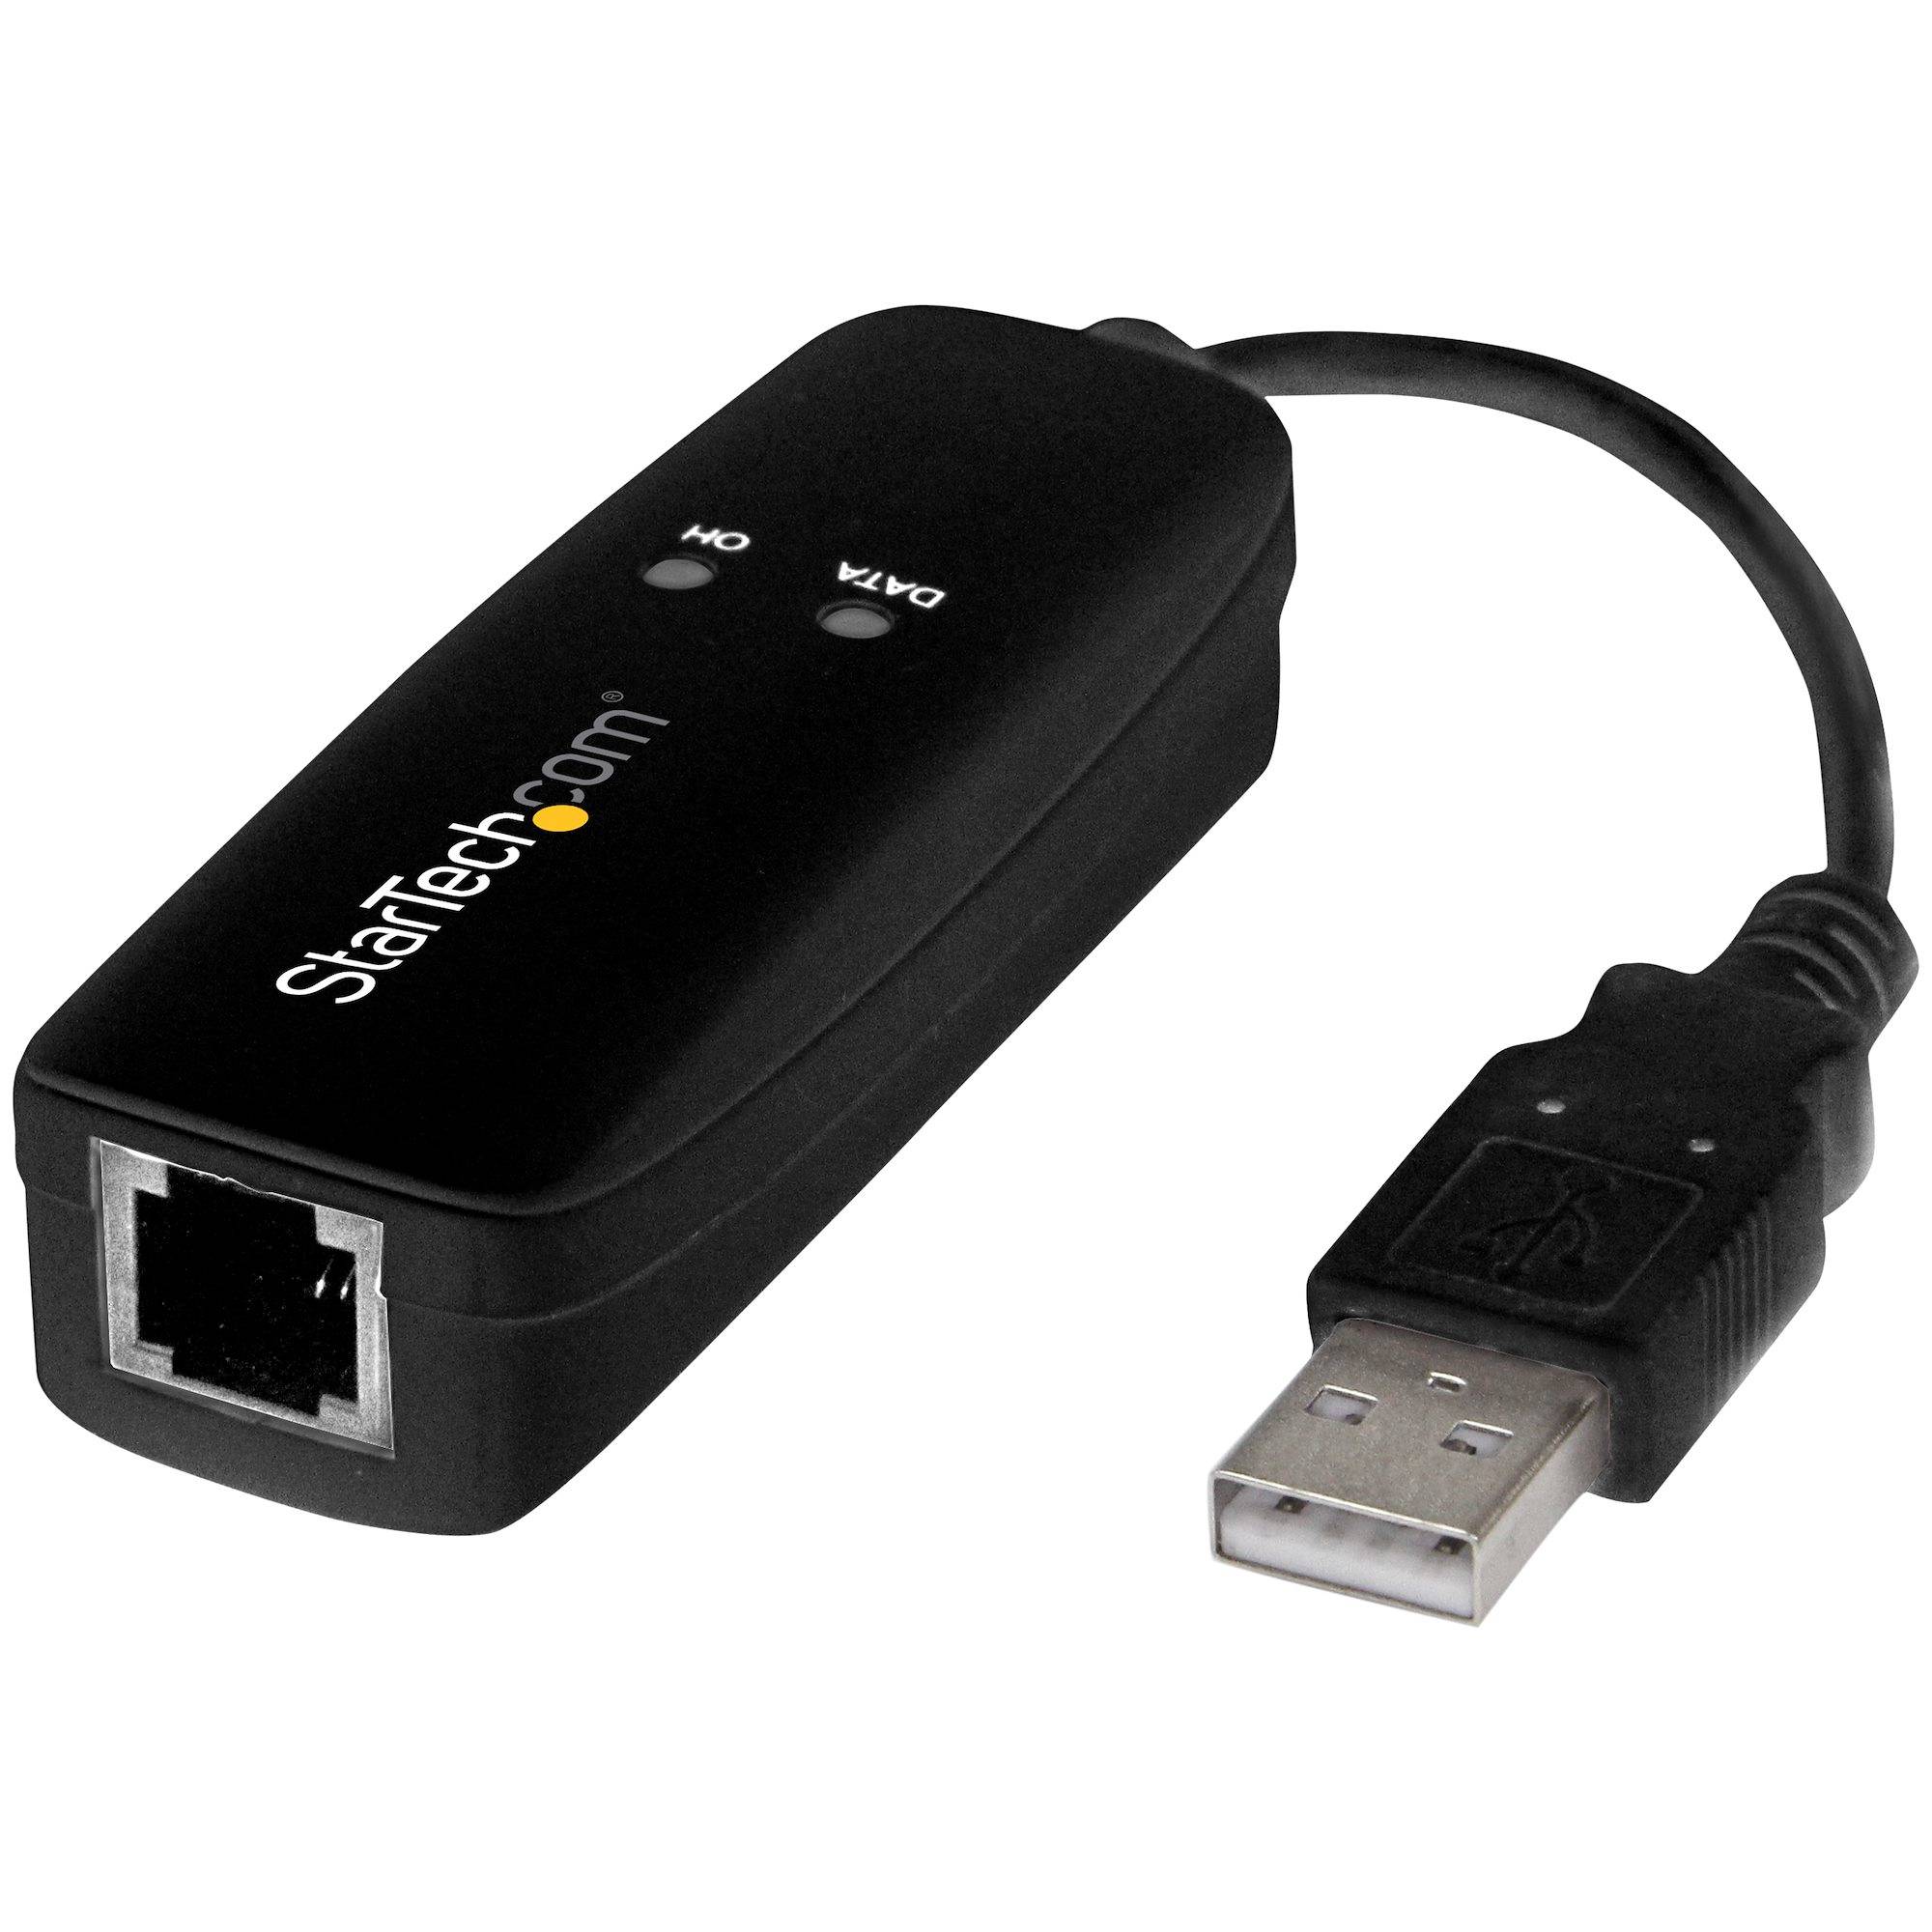 Rca Informatique - Image du produit : HARDWARE-BASED USB DIAL-UP AND FAX MODEM - V.92 - EXTERNAL